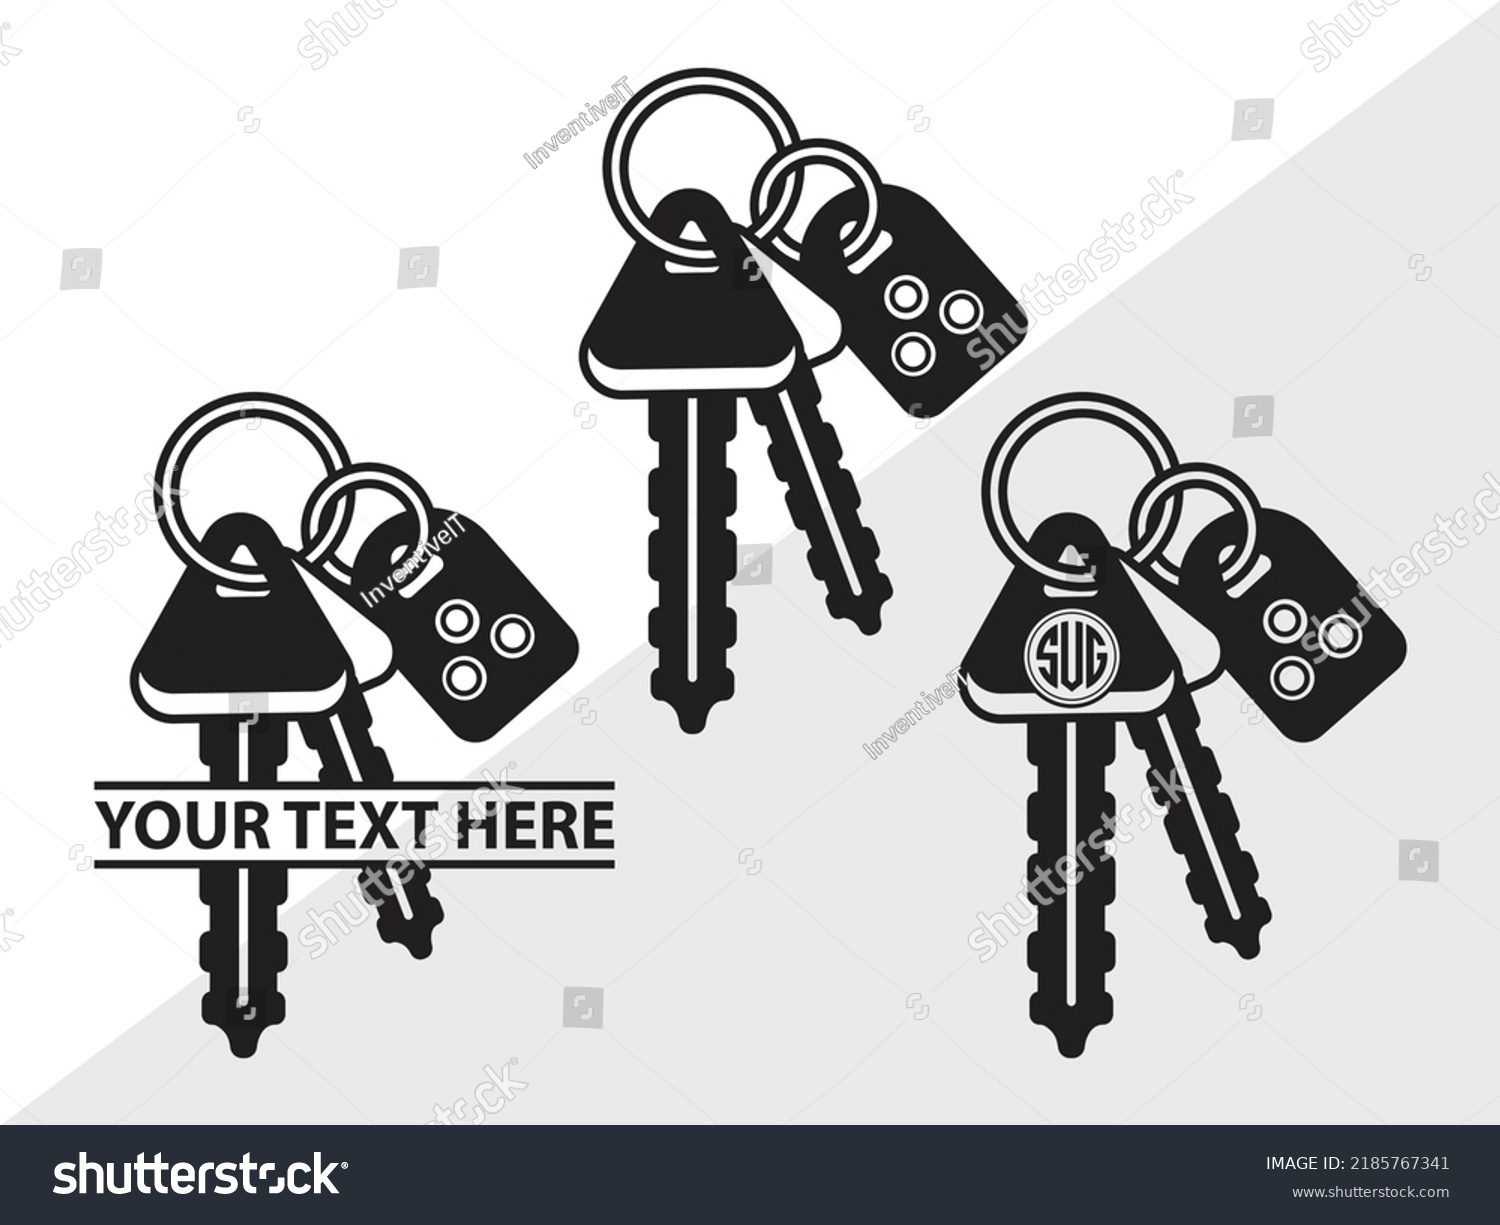 SVG of Car Keys Monogram SVG Printable Vector Illustration svg